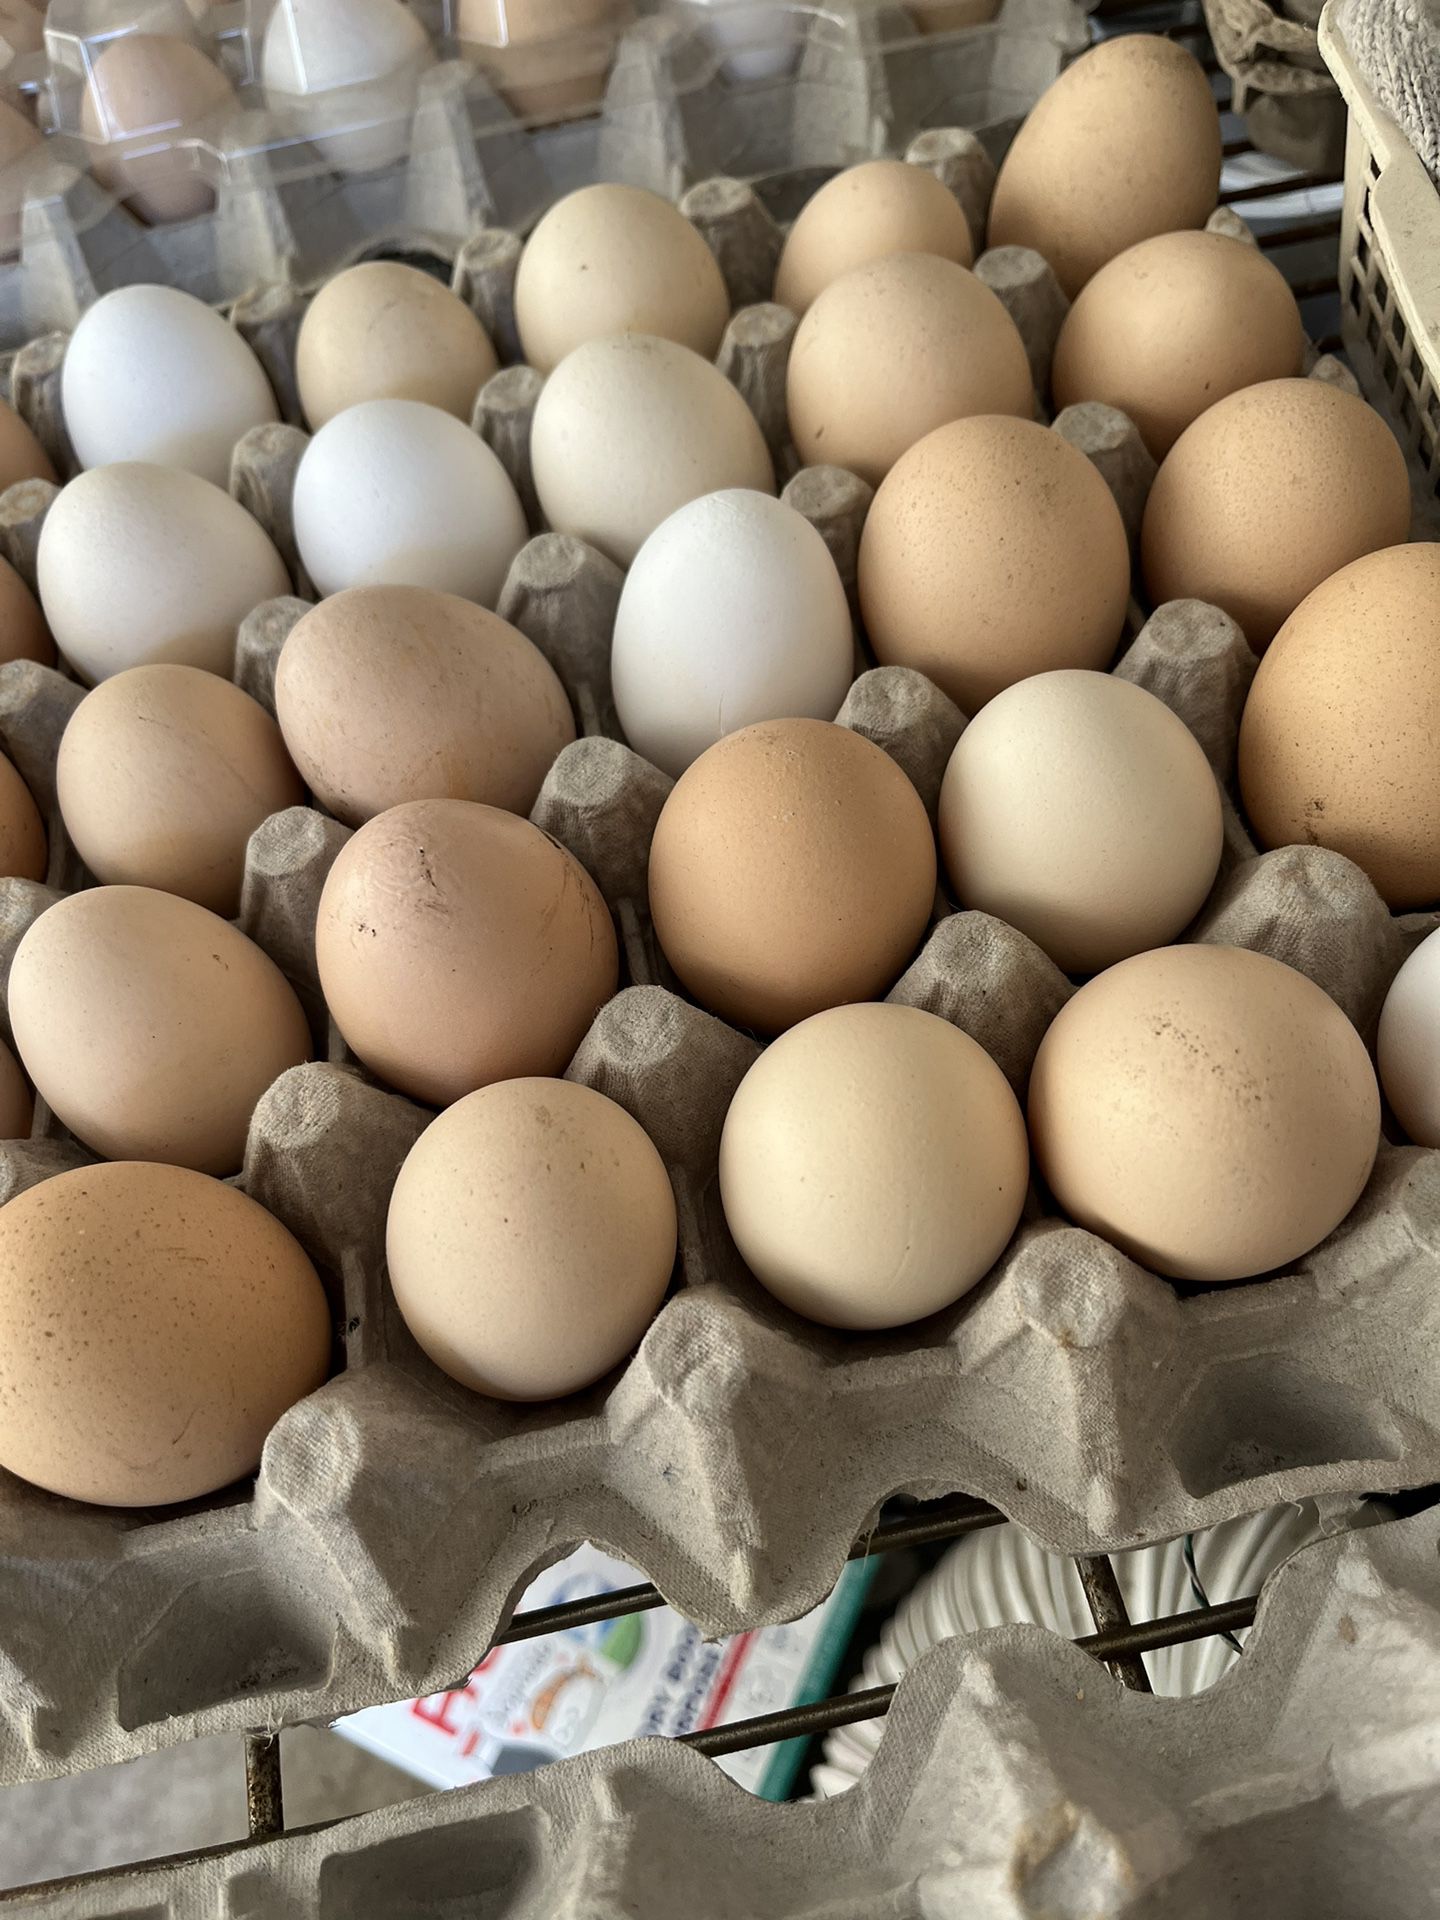 Fresh Farm Eggs For Sale $5 Per Dozen